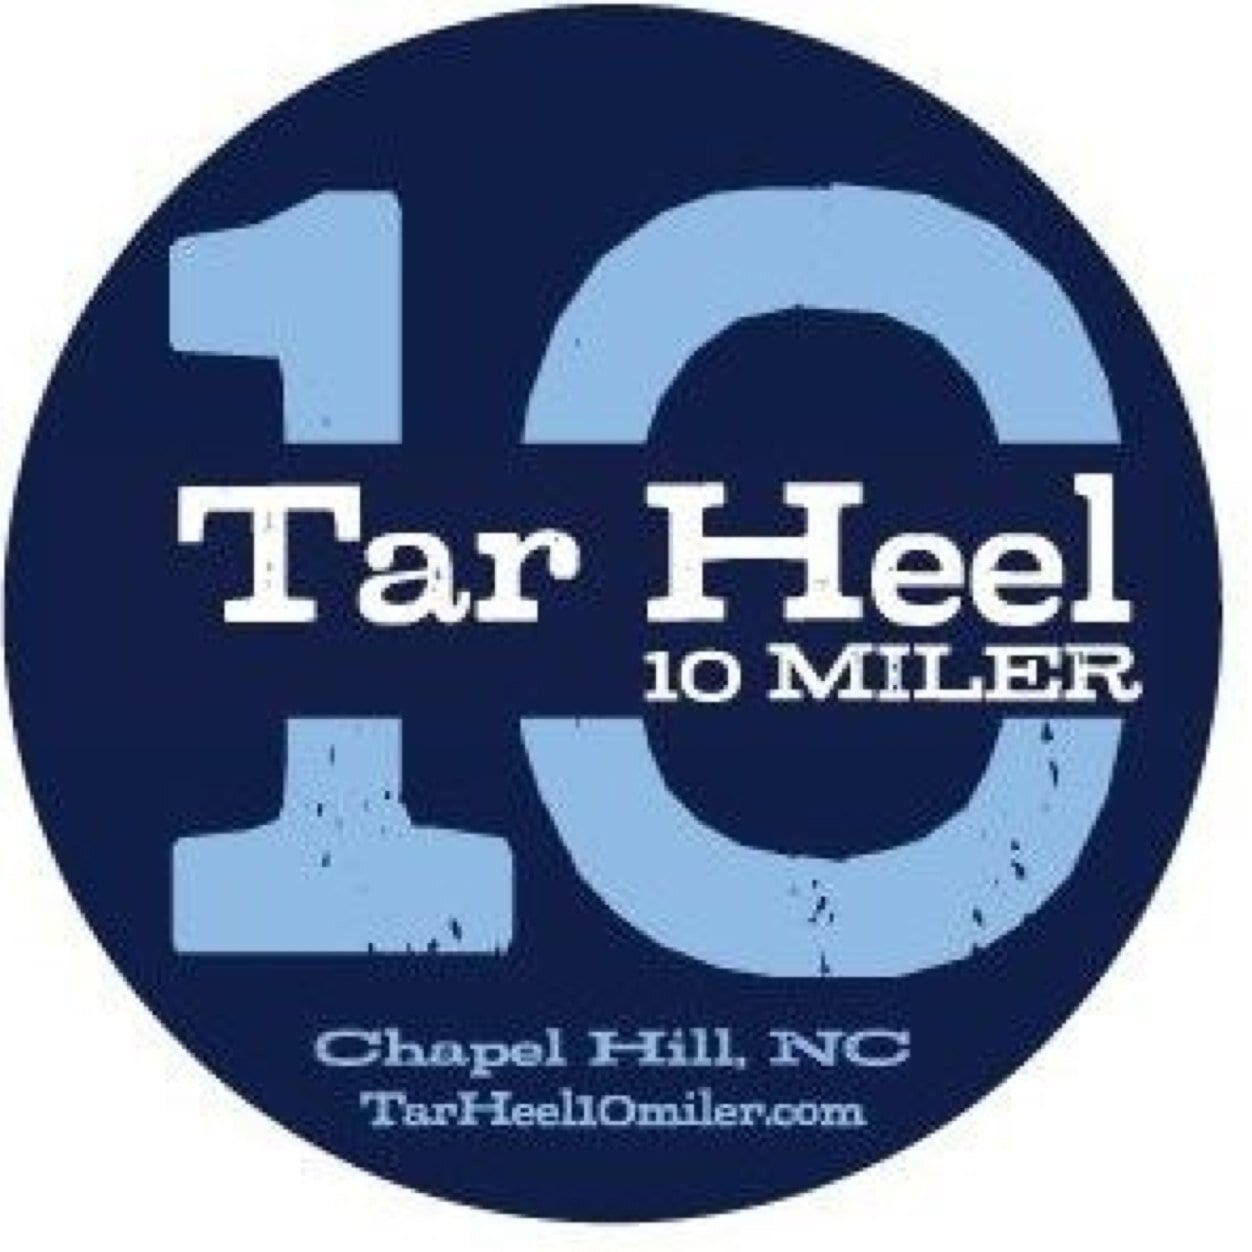 Tarheel 10 Miler – Tarheel 10 Miler